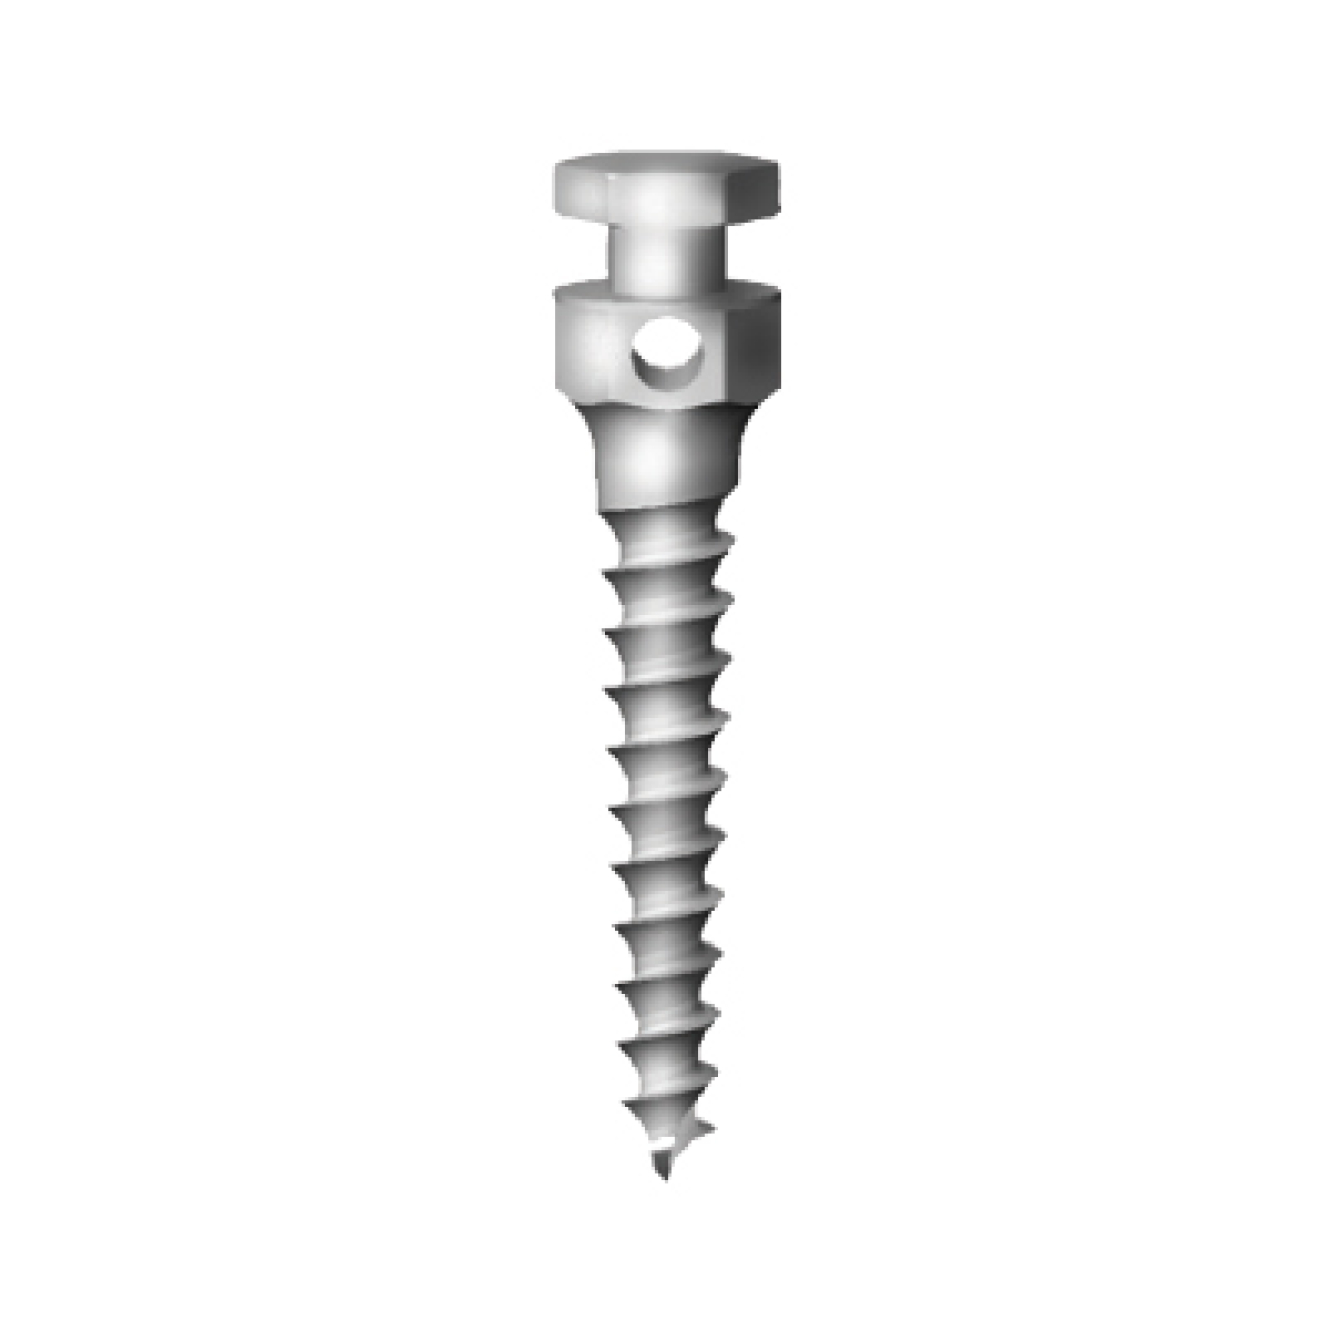 OS-L-16-006 Стоматологический ортодонтический винт для эластичной тяги и проволоки, диаметр 1.6 мм, длина 6 мм, Mr.Curette Tech, Южная Корея